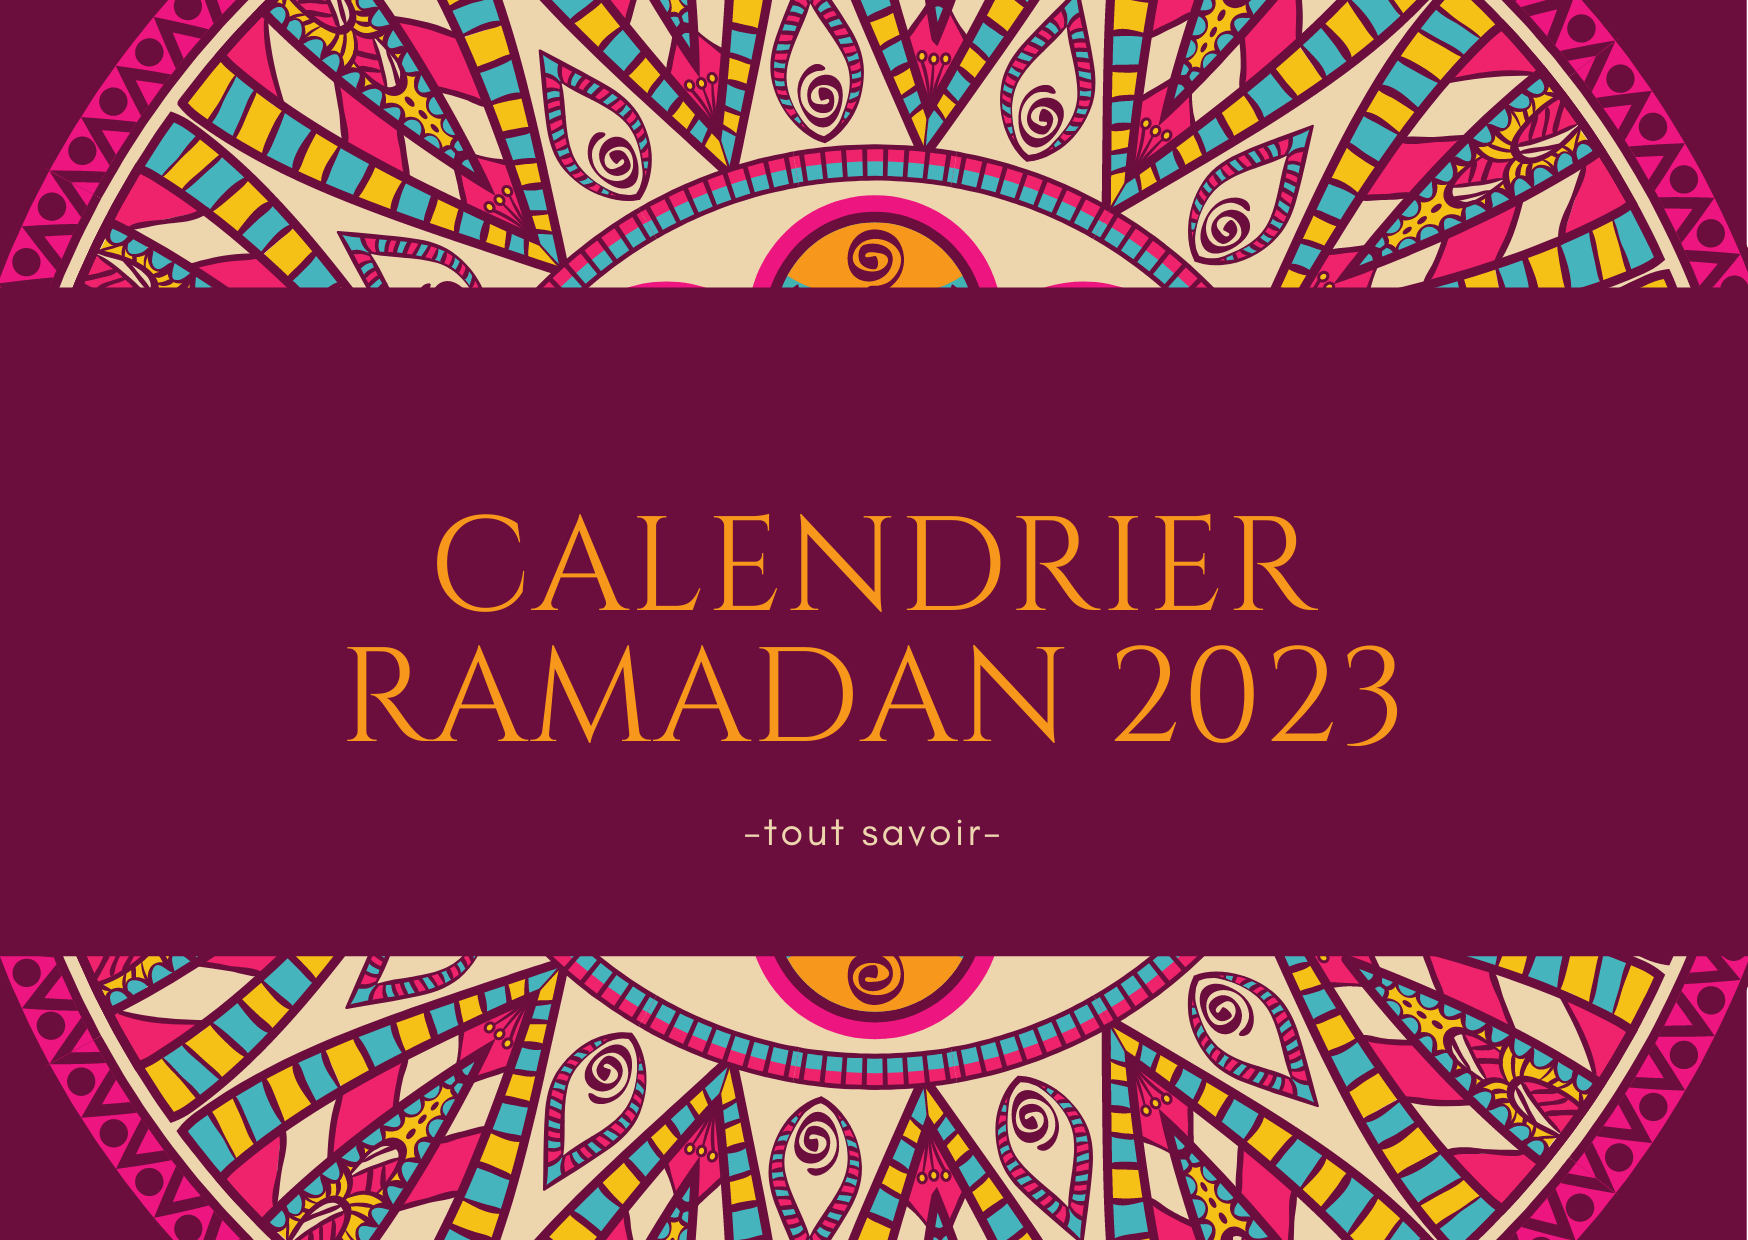 Quand commence le ramadan 2023 en France et quelle est la date de